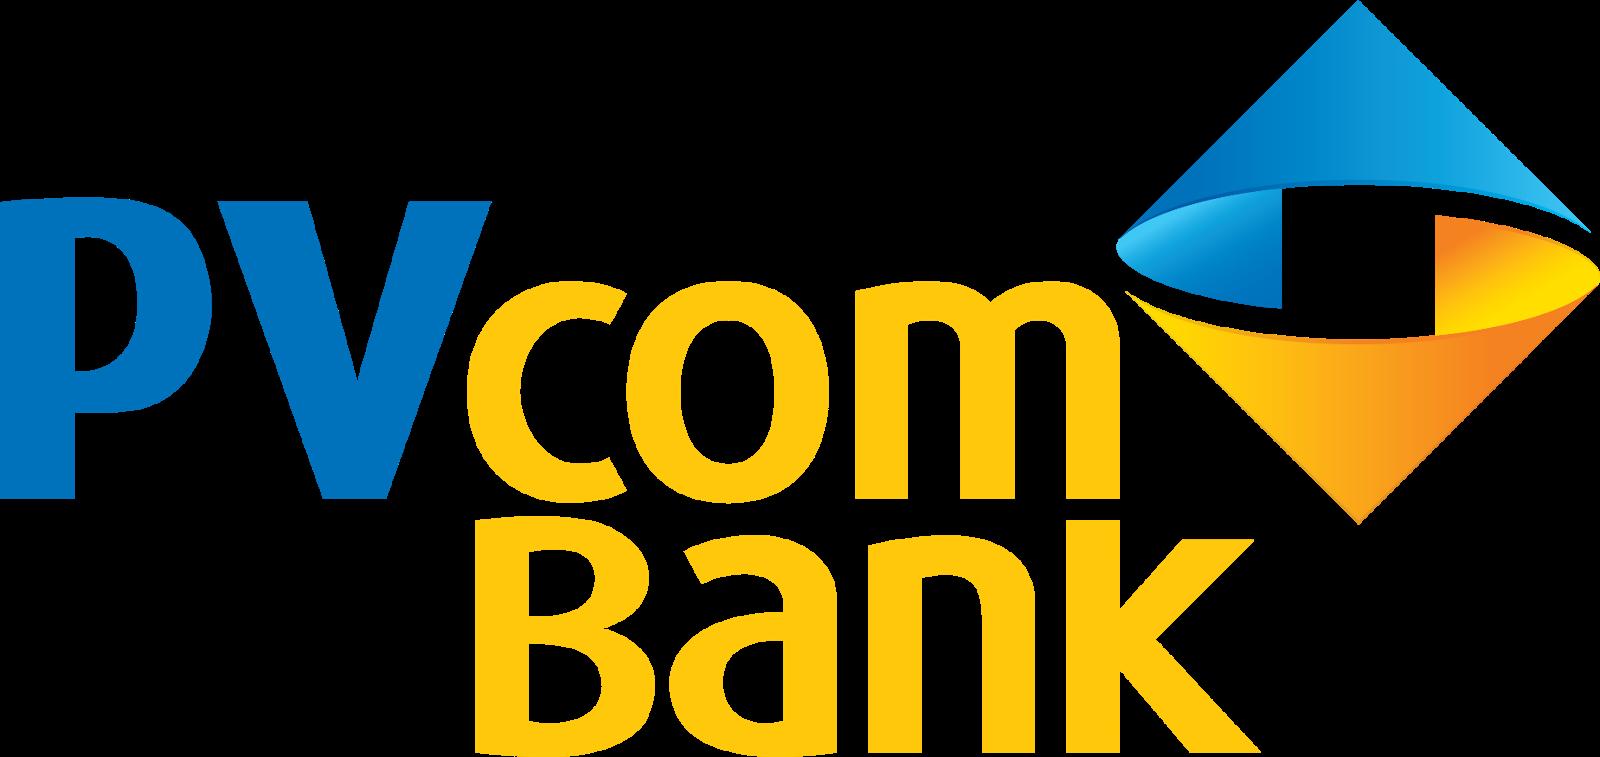 Logo PVcombank mang ý nghĩa gì?